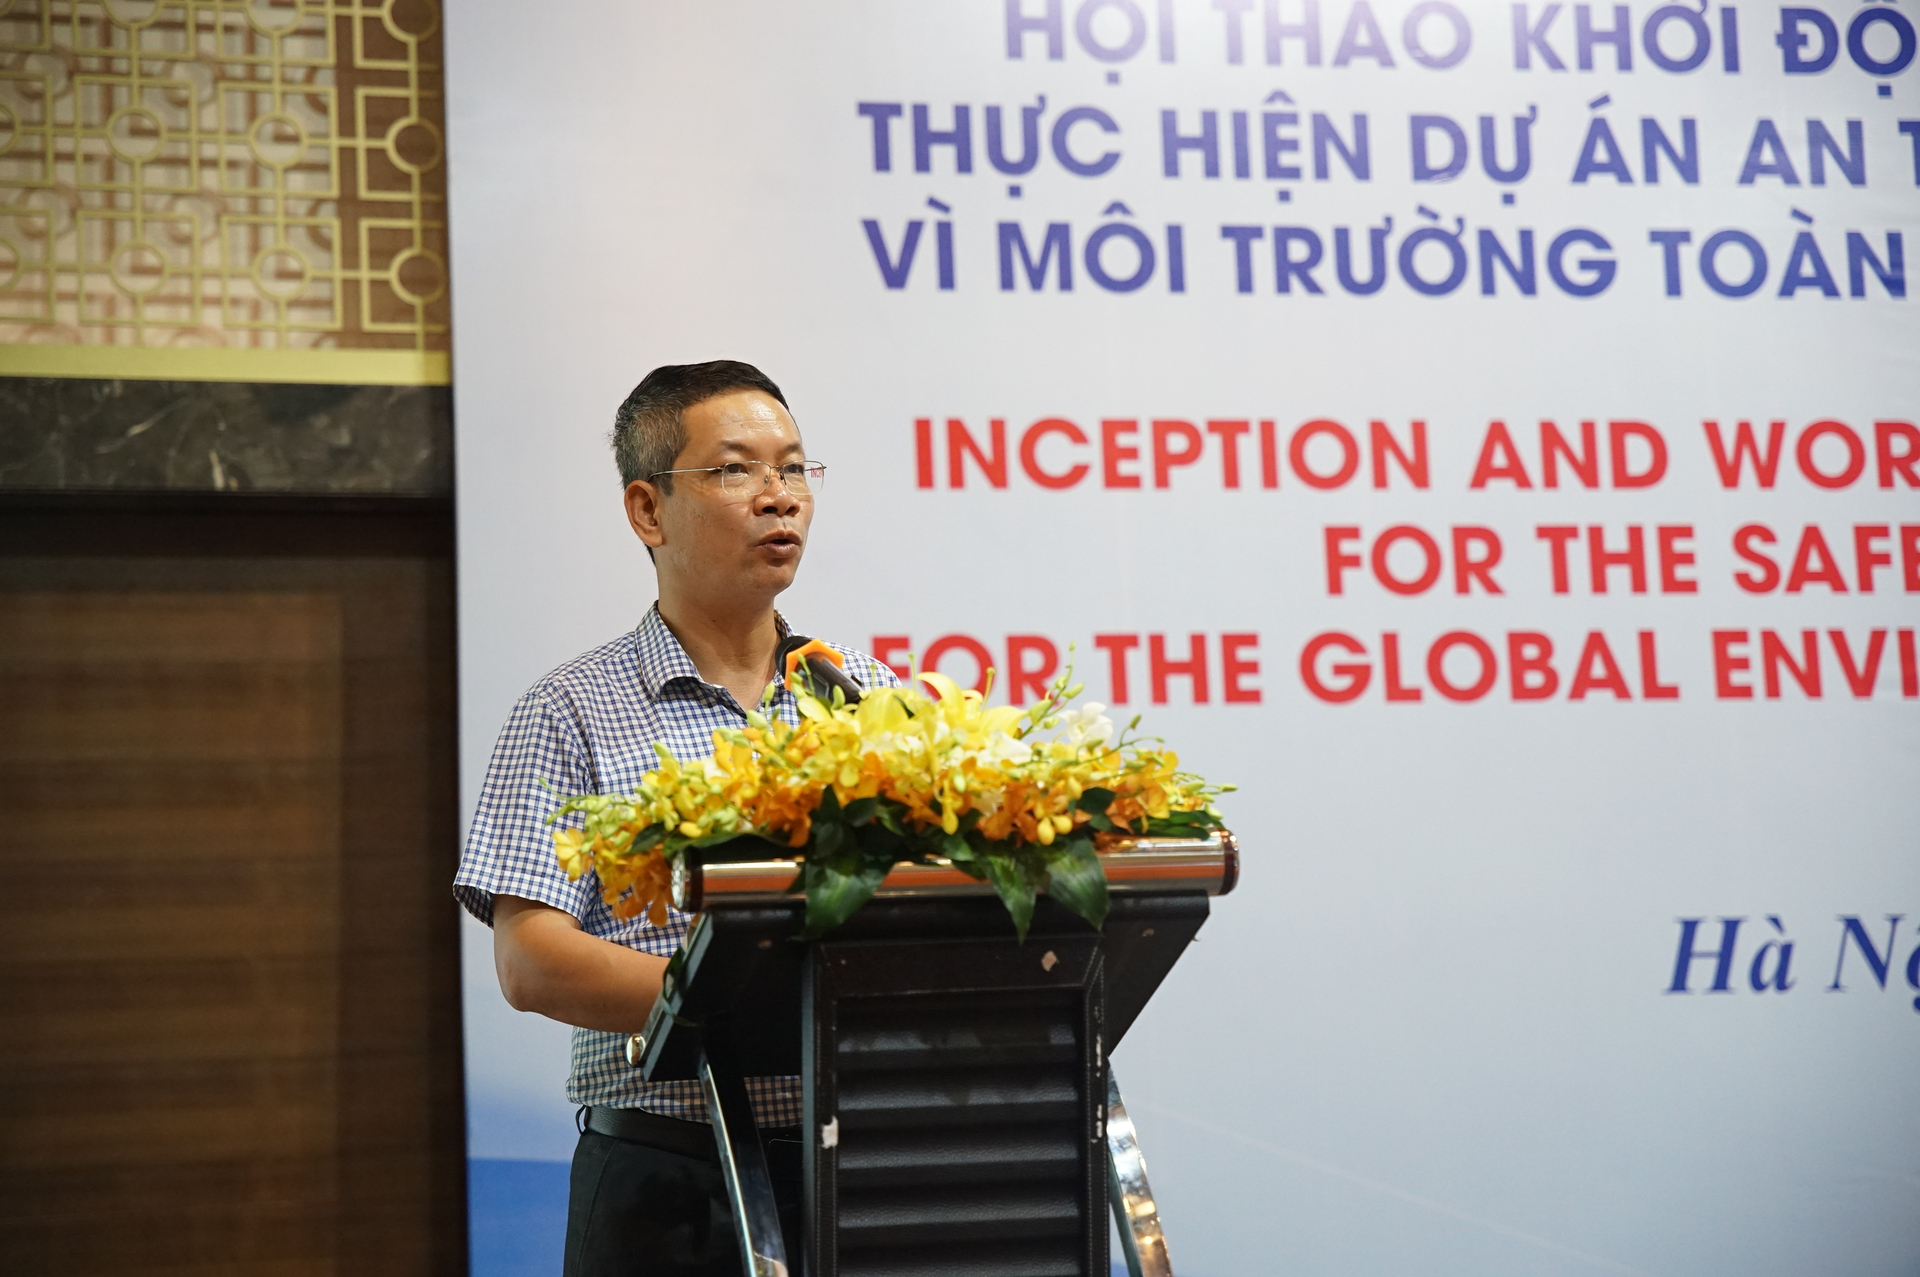 Ông Vũ Thanh Liêm, Phó Vụ trưởng Vụ Hợp tác quốc tế (Bộ NN-PTNT) phát biểu tại hội thảo. Ảnh: Linh Linh.